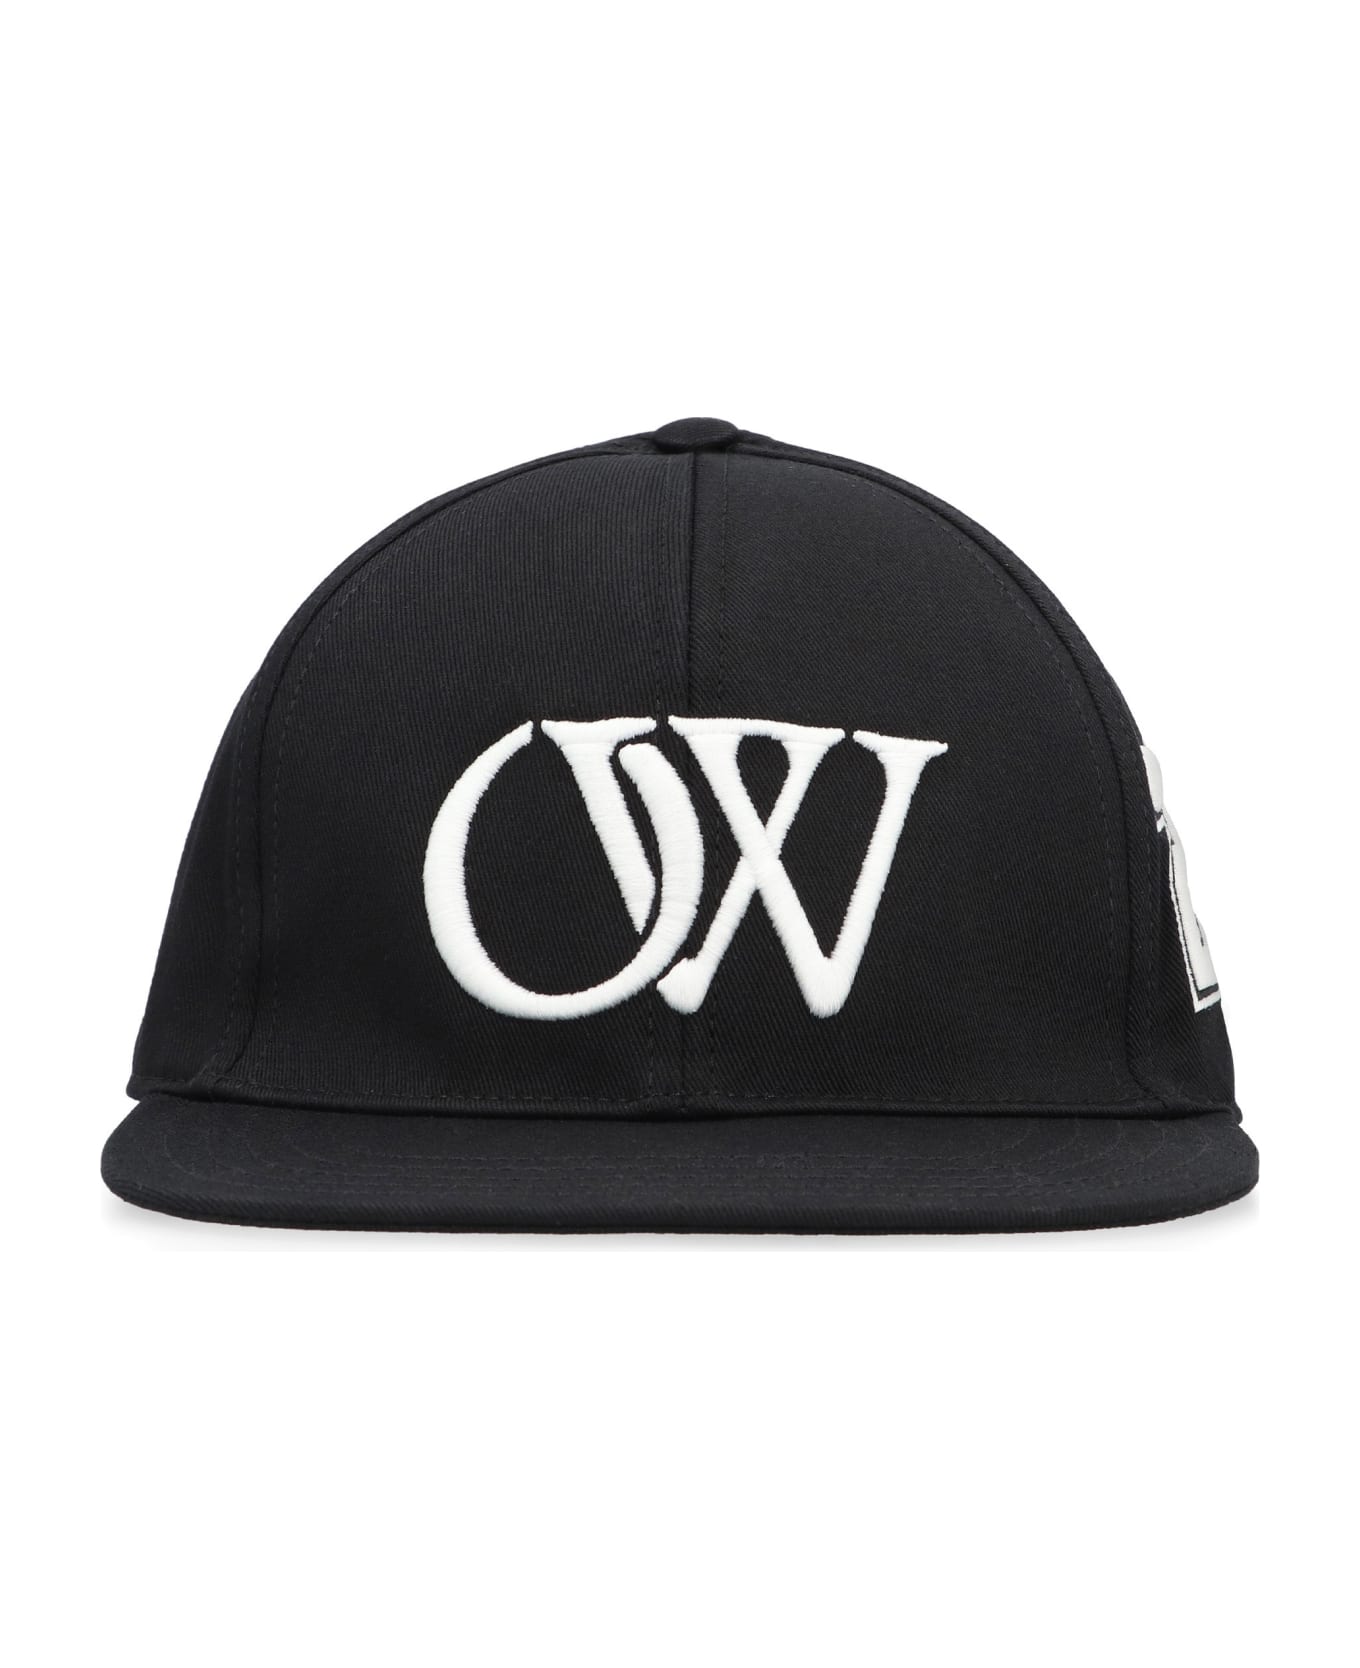 Off-White Baseball Hat With Flat Visor - black